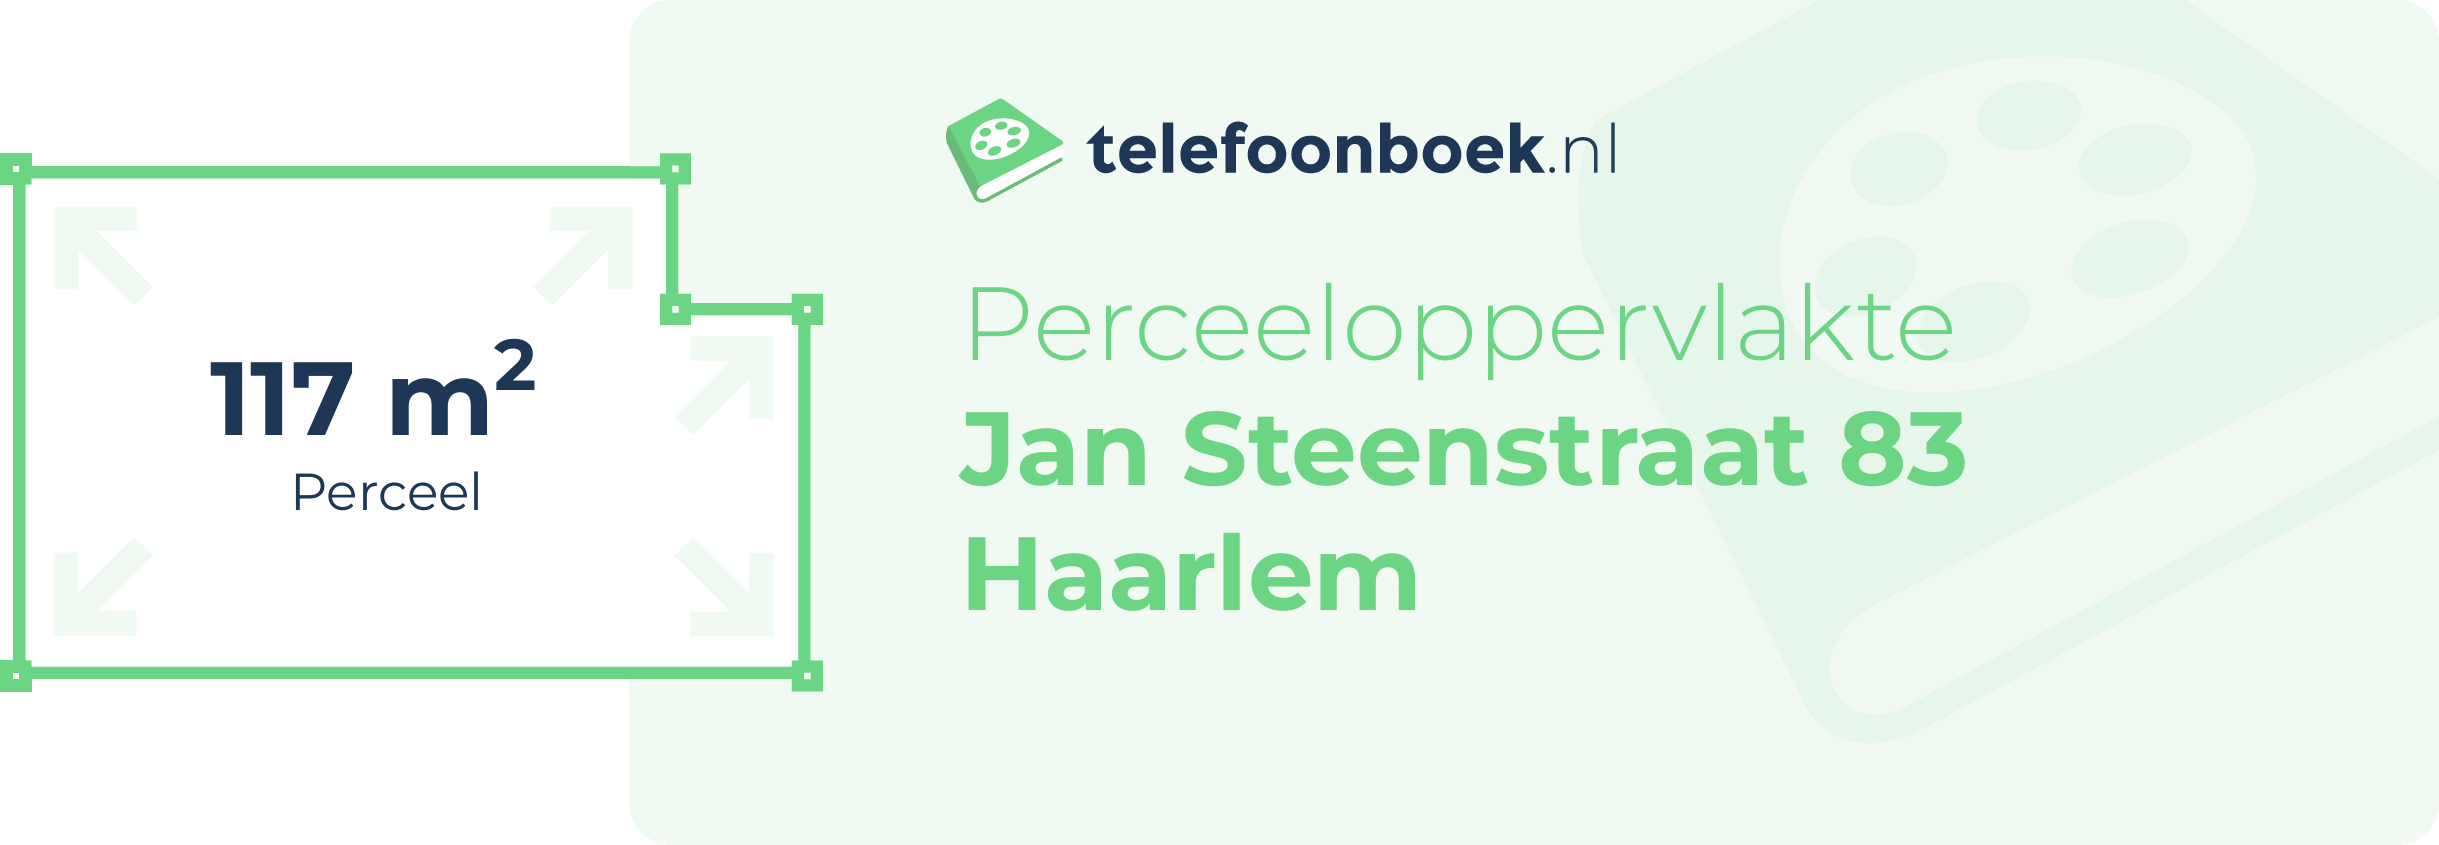 Perceeloppervlakte Jan Steenstraat 83 Haarlem